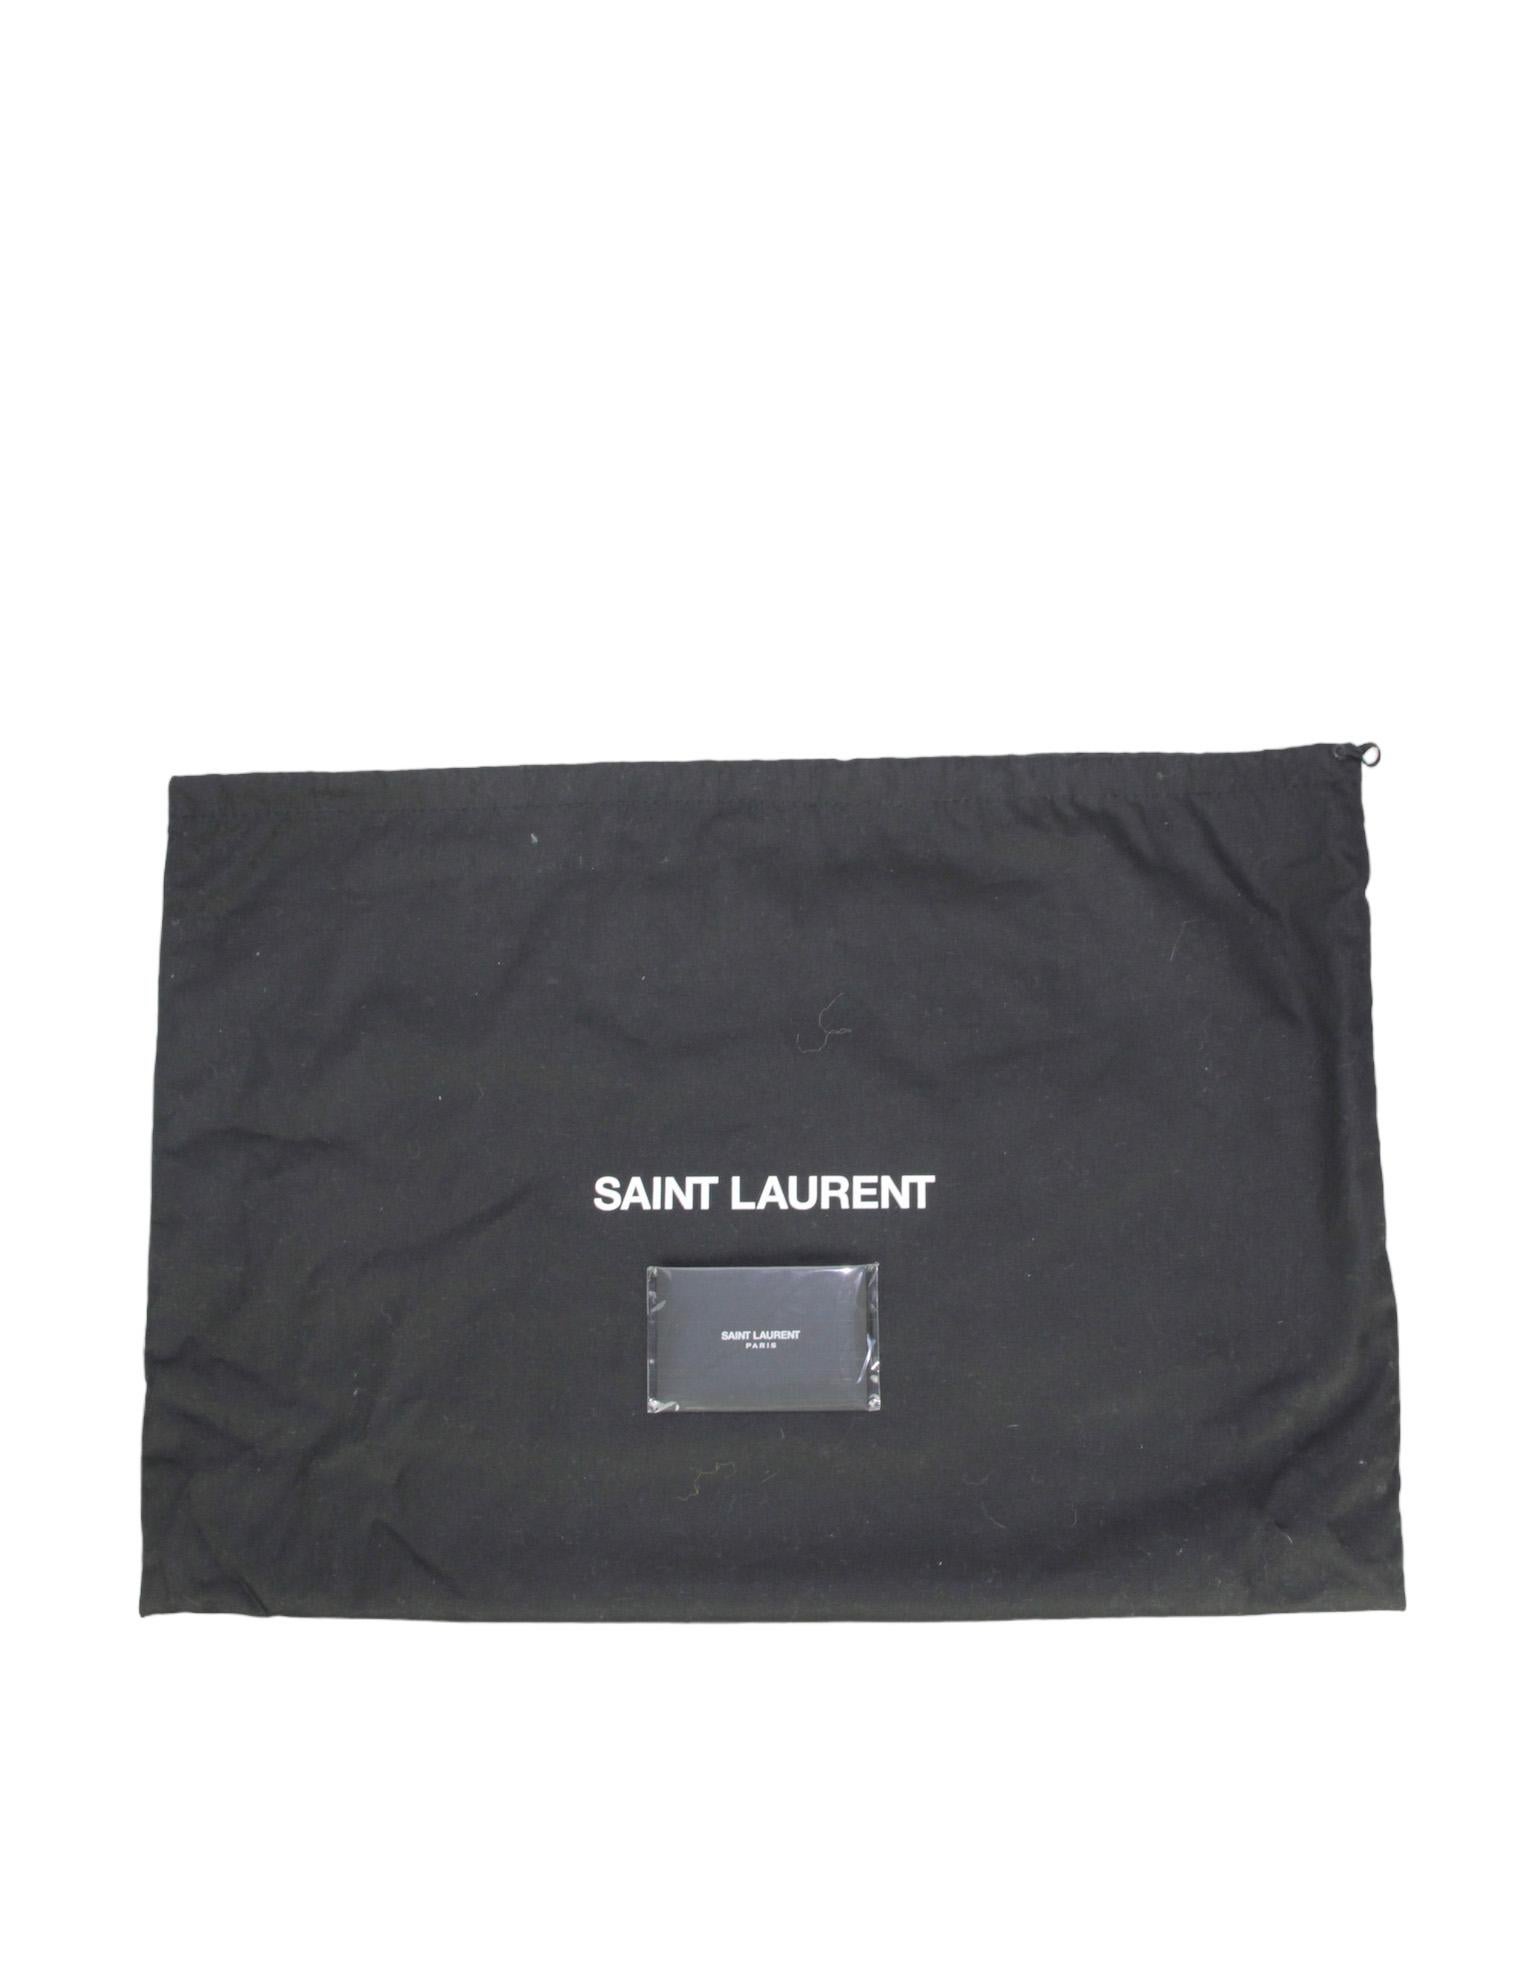 Saint Laurent NEU So Black Leather Kleine Loulou Puffertasche rt. $3300 im Angebot 6